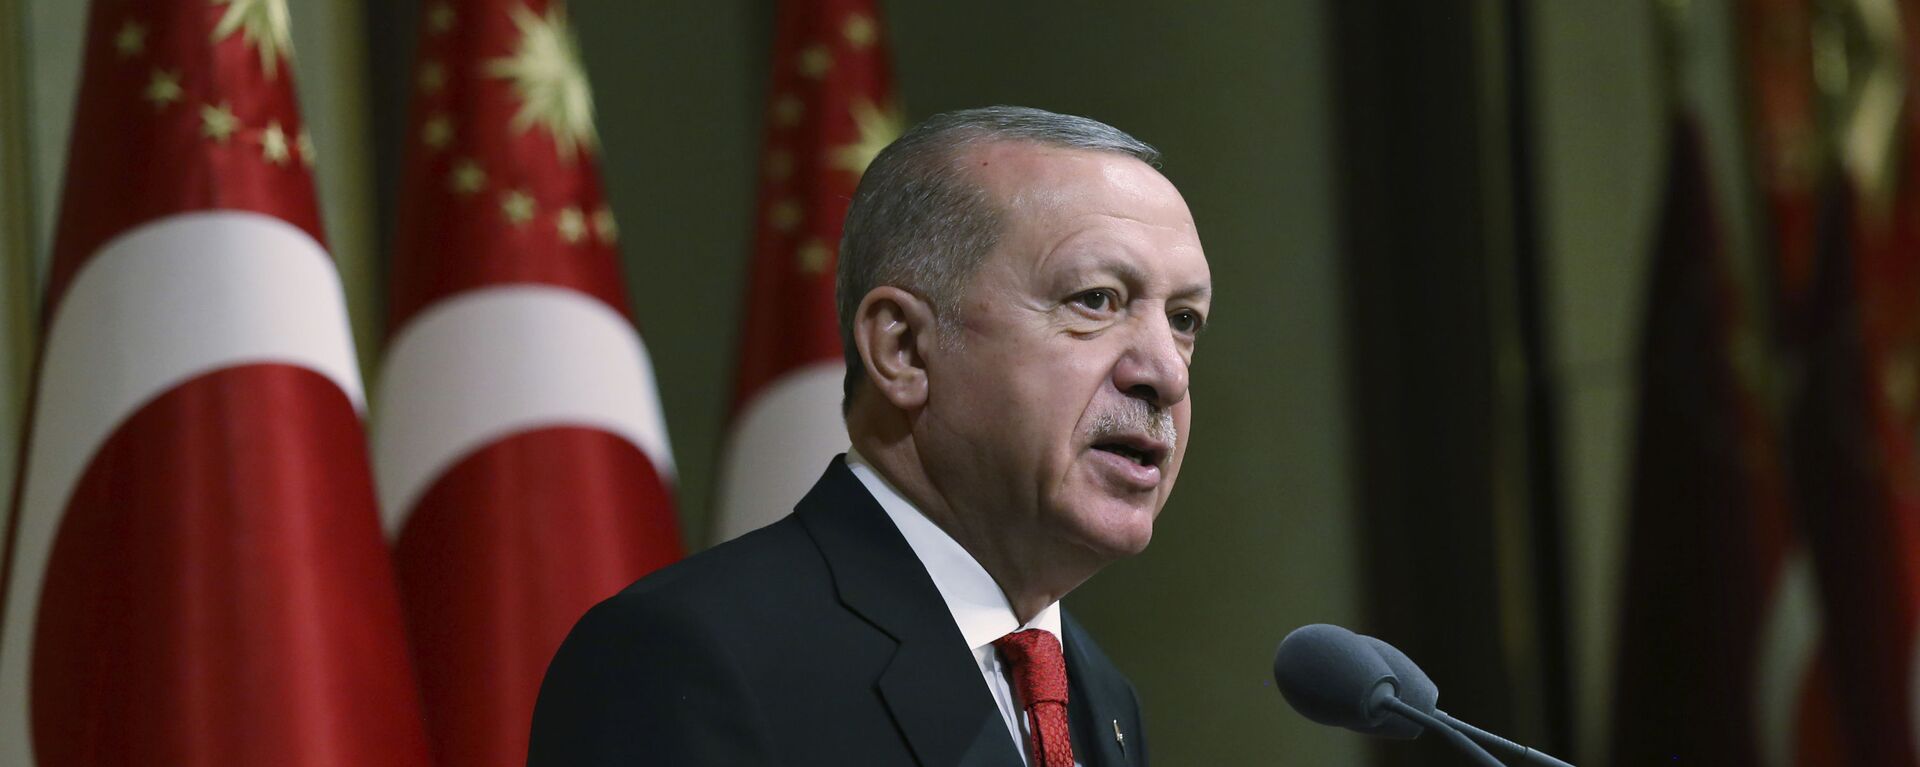 Tổng thống Thổ Nhĩ Kỳ Recep Tayyip Erdogan phát biểu tại dinh thự tổng thống ở Ankara - Sputnik Việt Nam, 1920, 18.05.2021